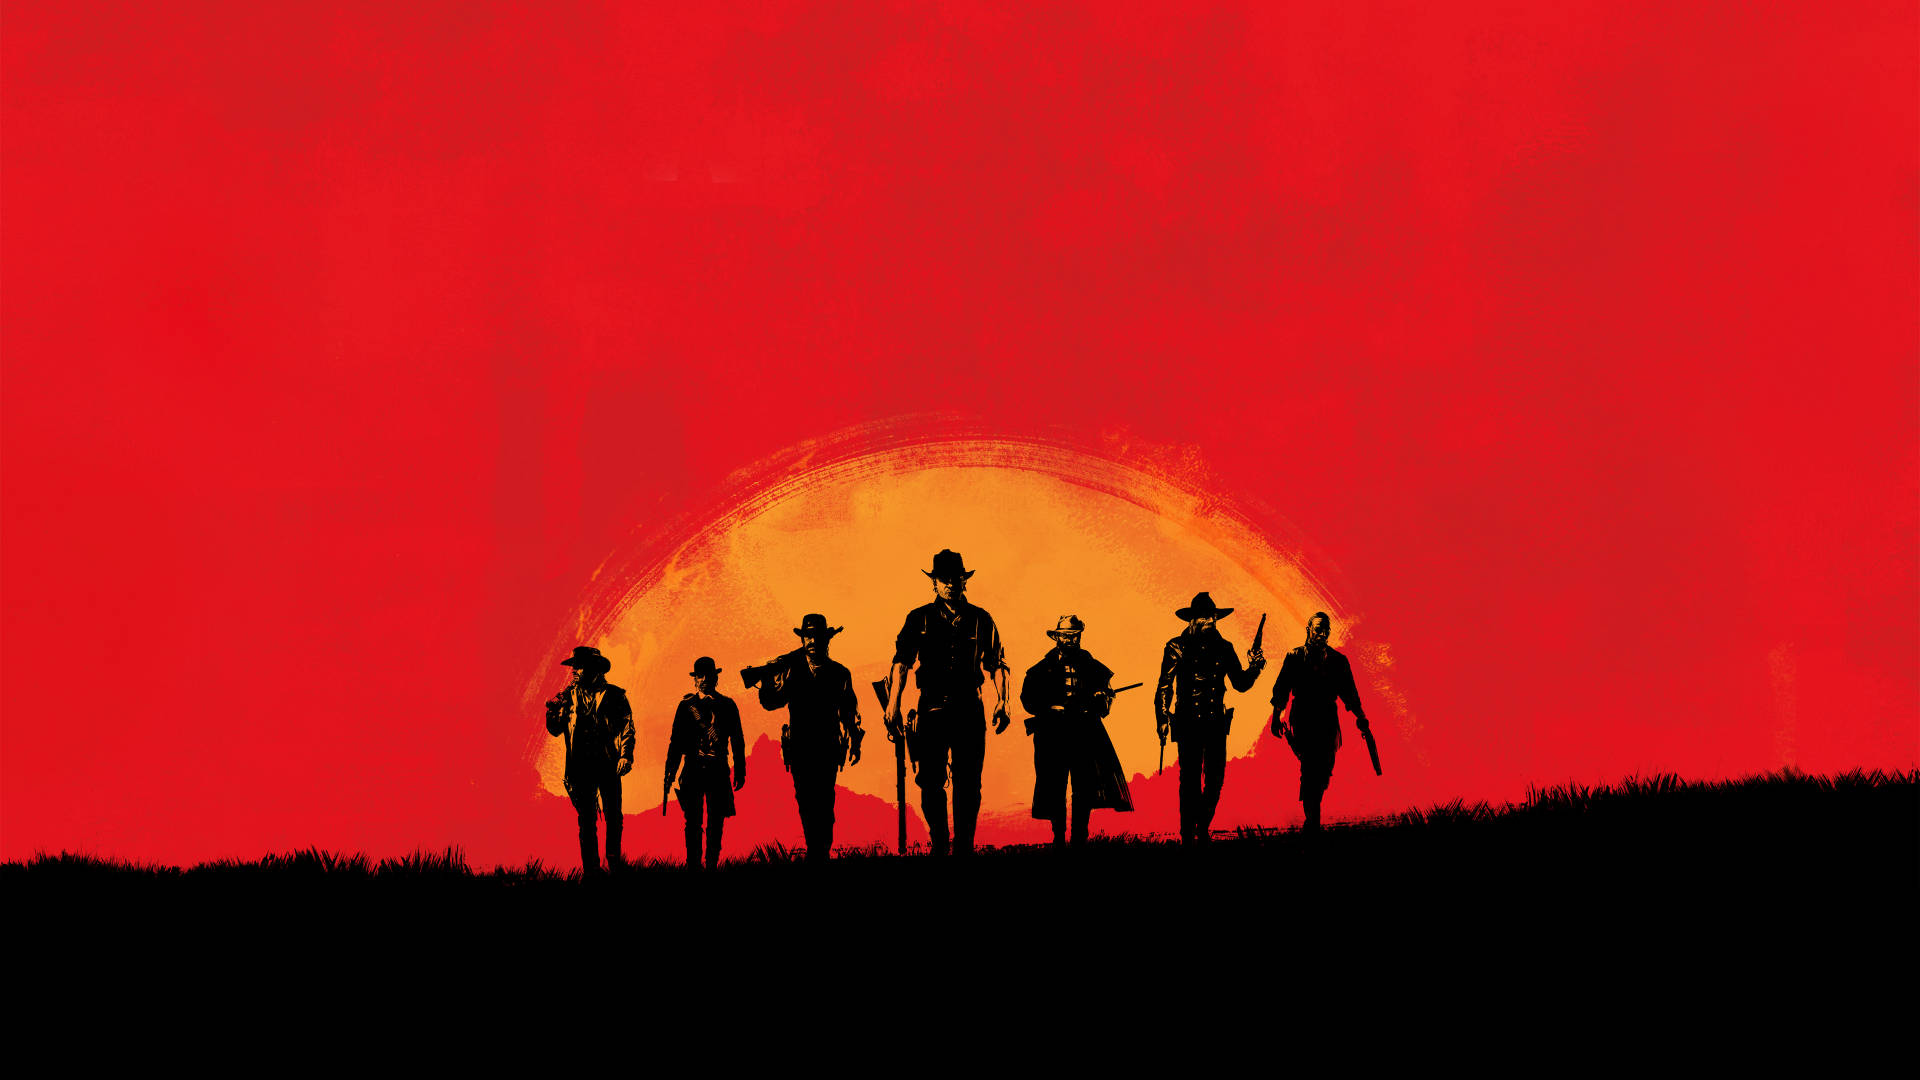 Lev et liv med eventyr som Arthur Morgan i Red Dead Redemption 2. Wallpaper